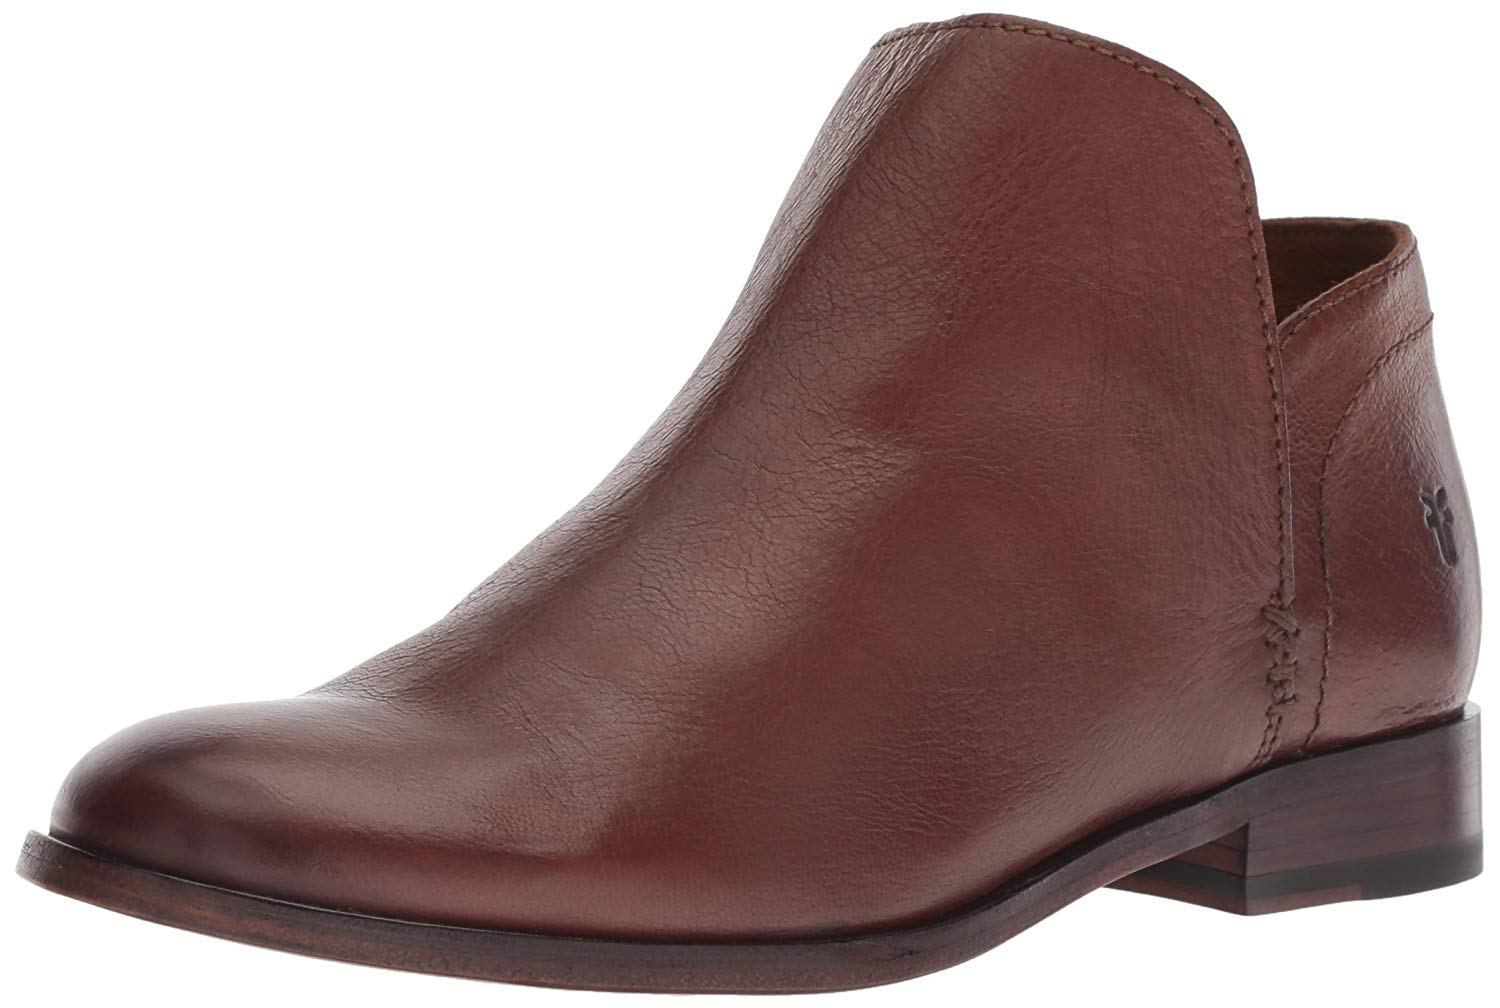 FRYE Women's Elyssa Shootie Ankle Boot, Cognac, Size 7.5 TKUf | eBay